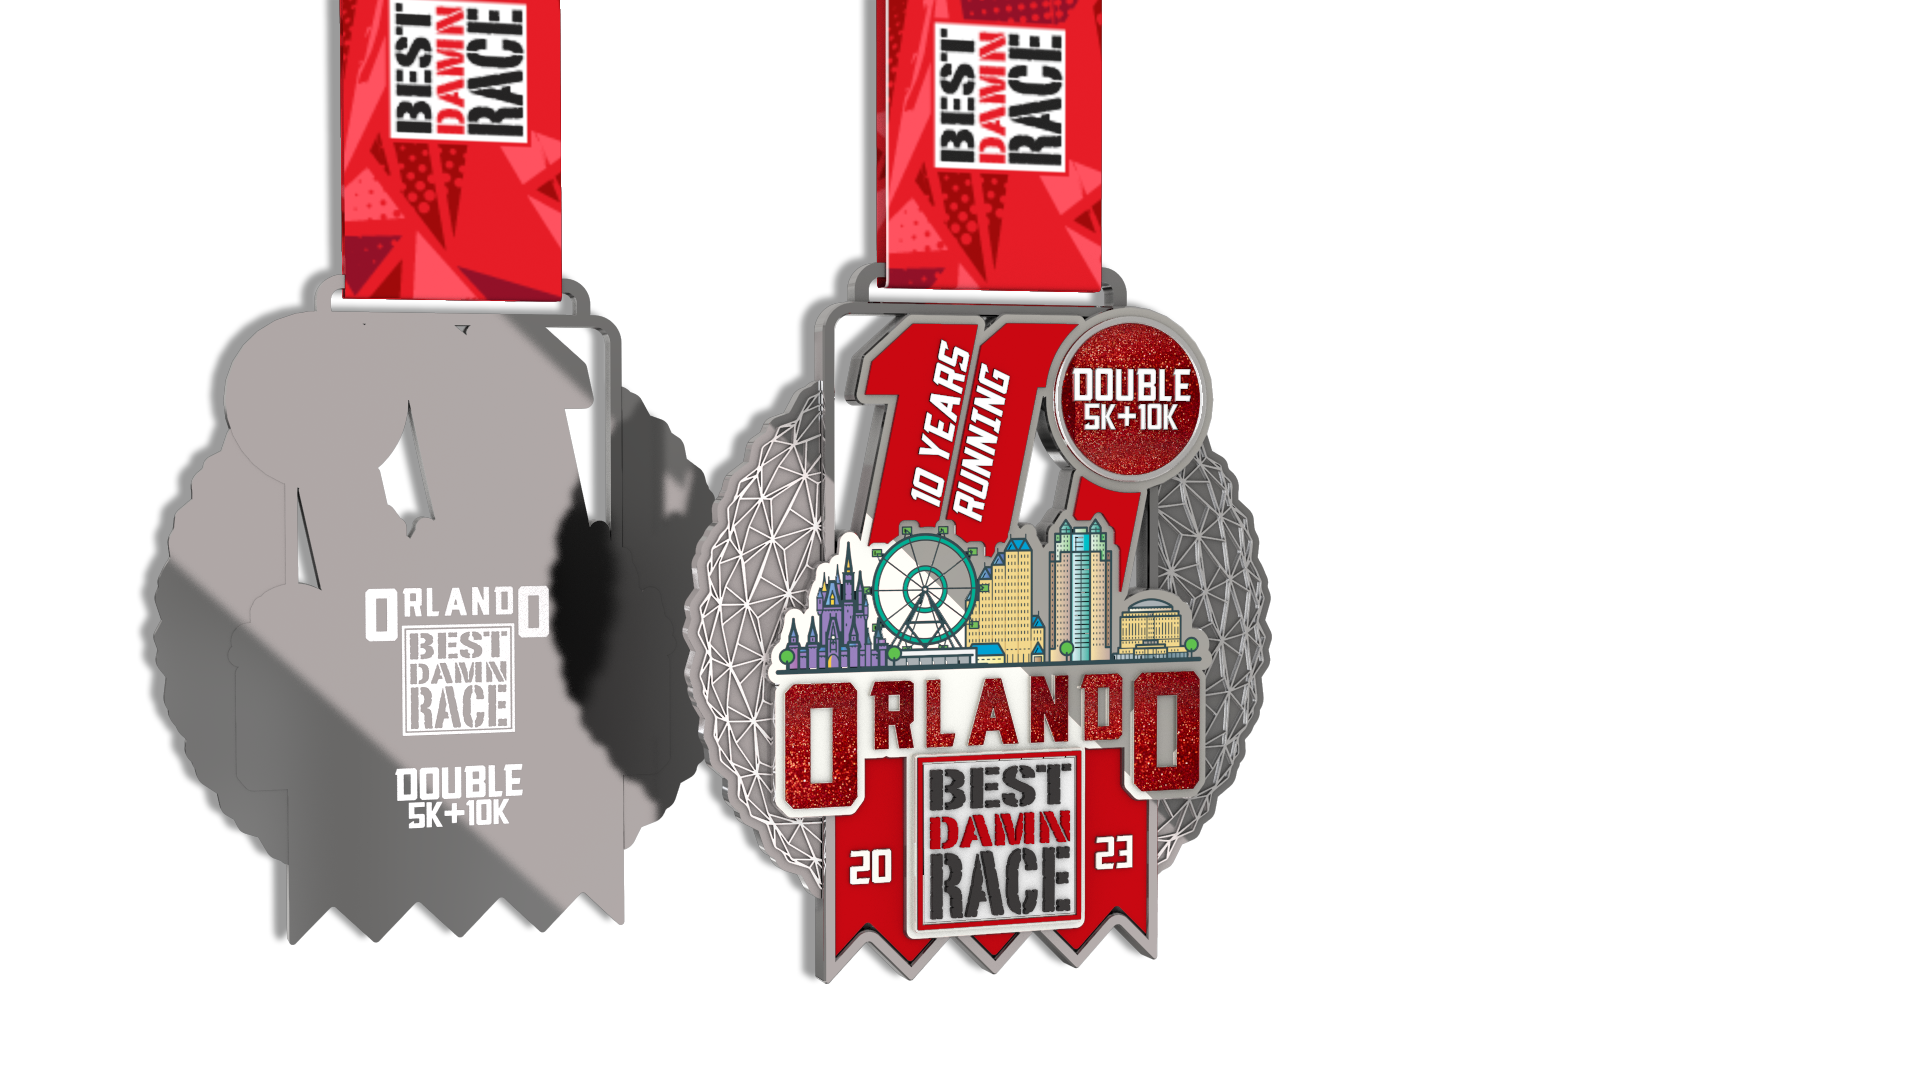 2020 5K+10K Challenge Medal - Orlando